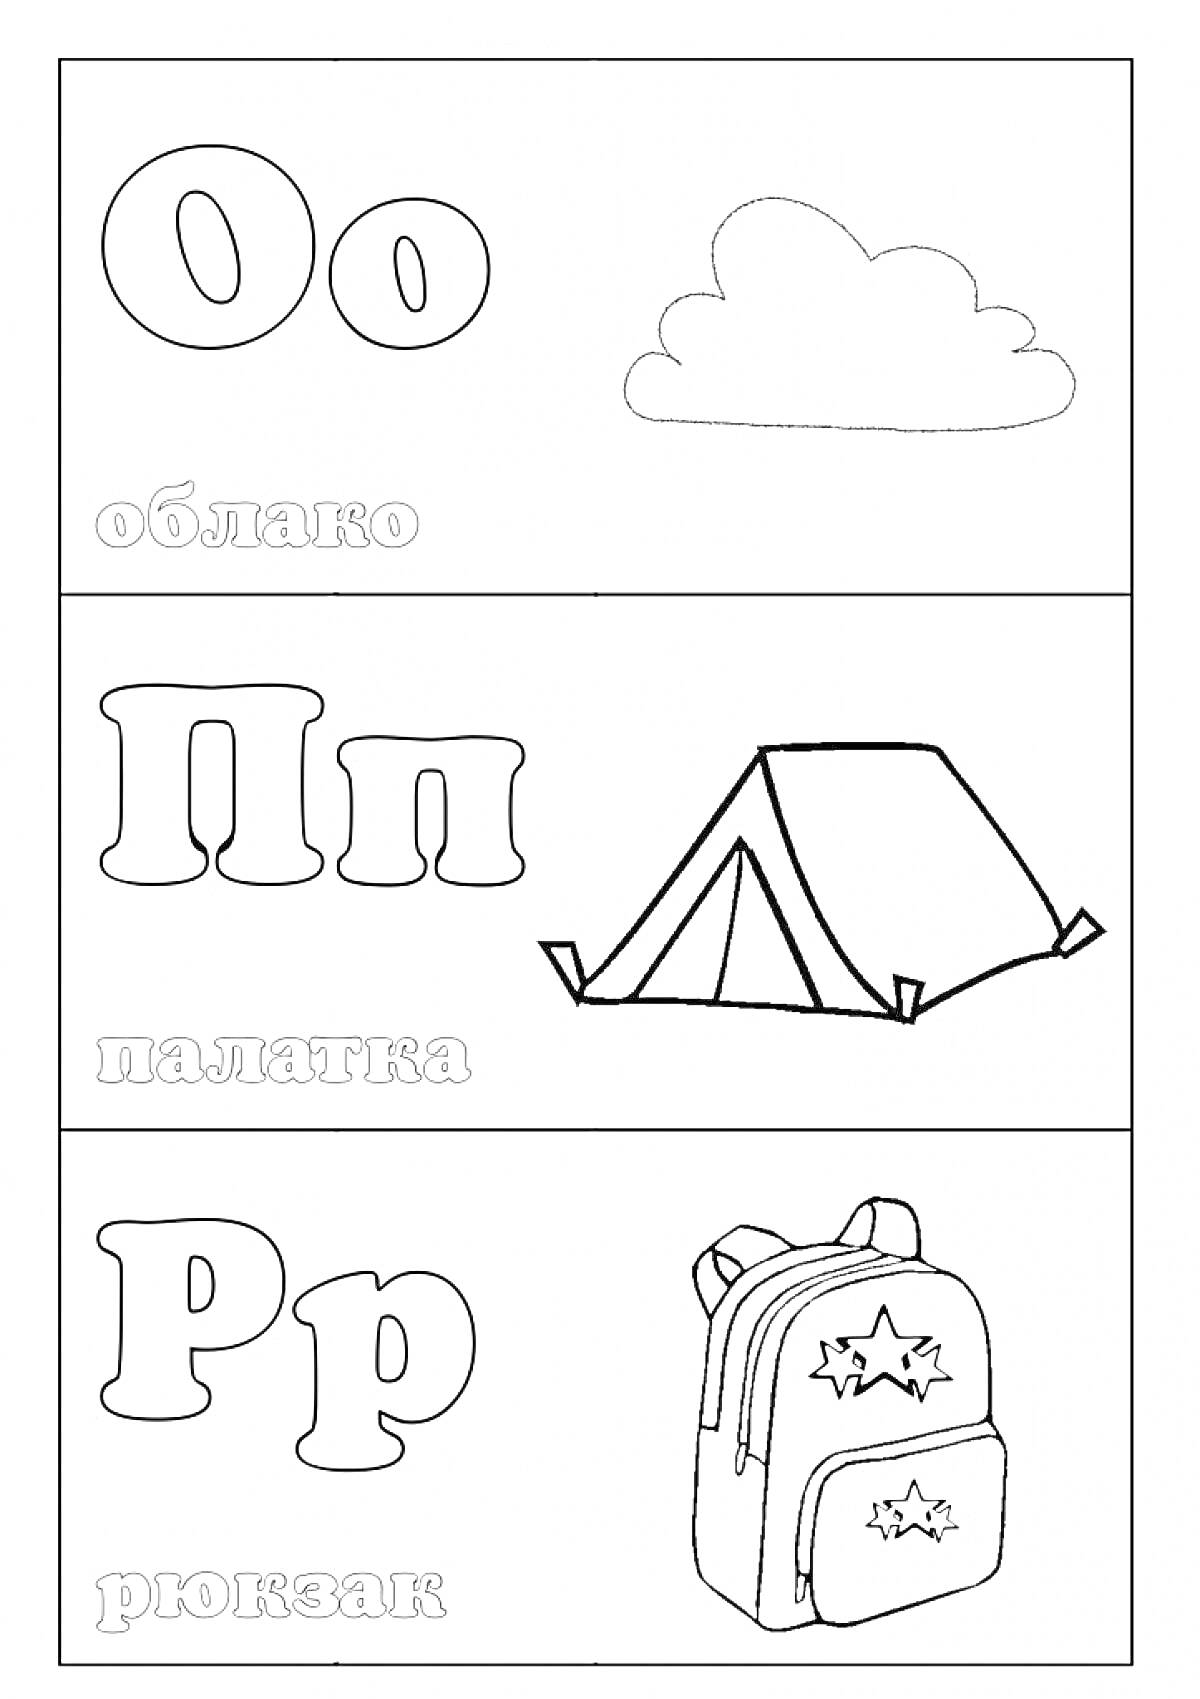 Раскраска Буквы О, П, Р с изображениями облака, палатки и рюкзака